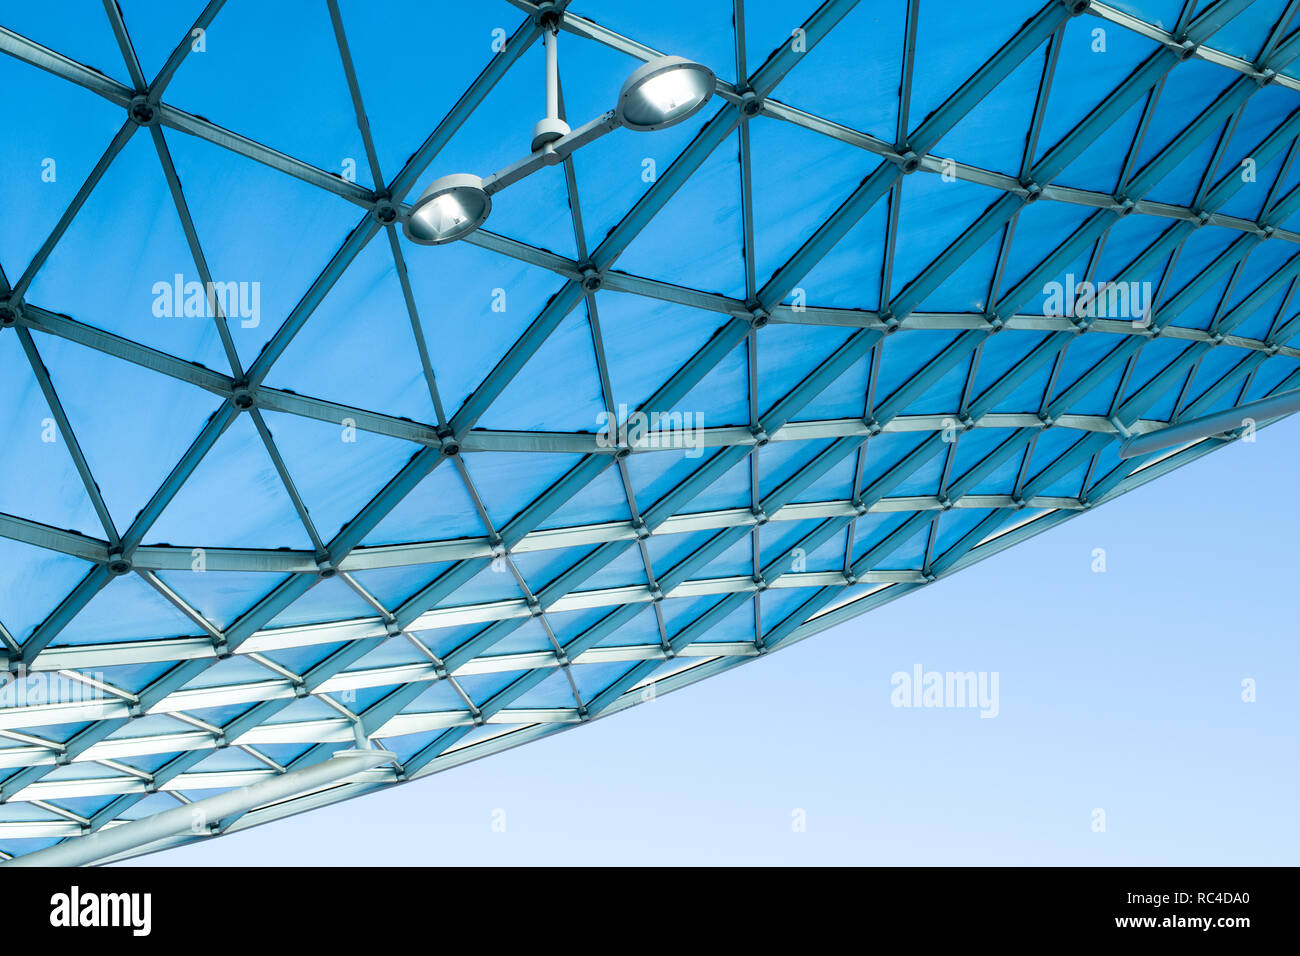 L'architecture moderne avec toit en verre design incurvé de structure d'acier. Low angle view avec ciel bleu, l'éclairage intérieur et mur blanc de l'immeuble Banque D'Images